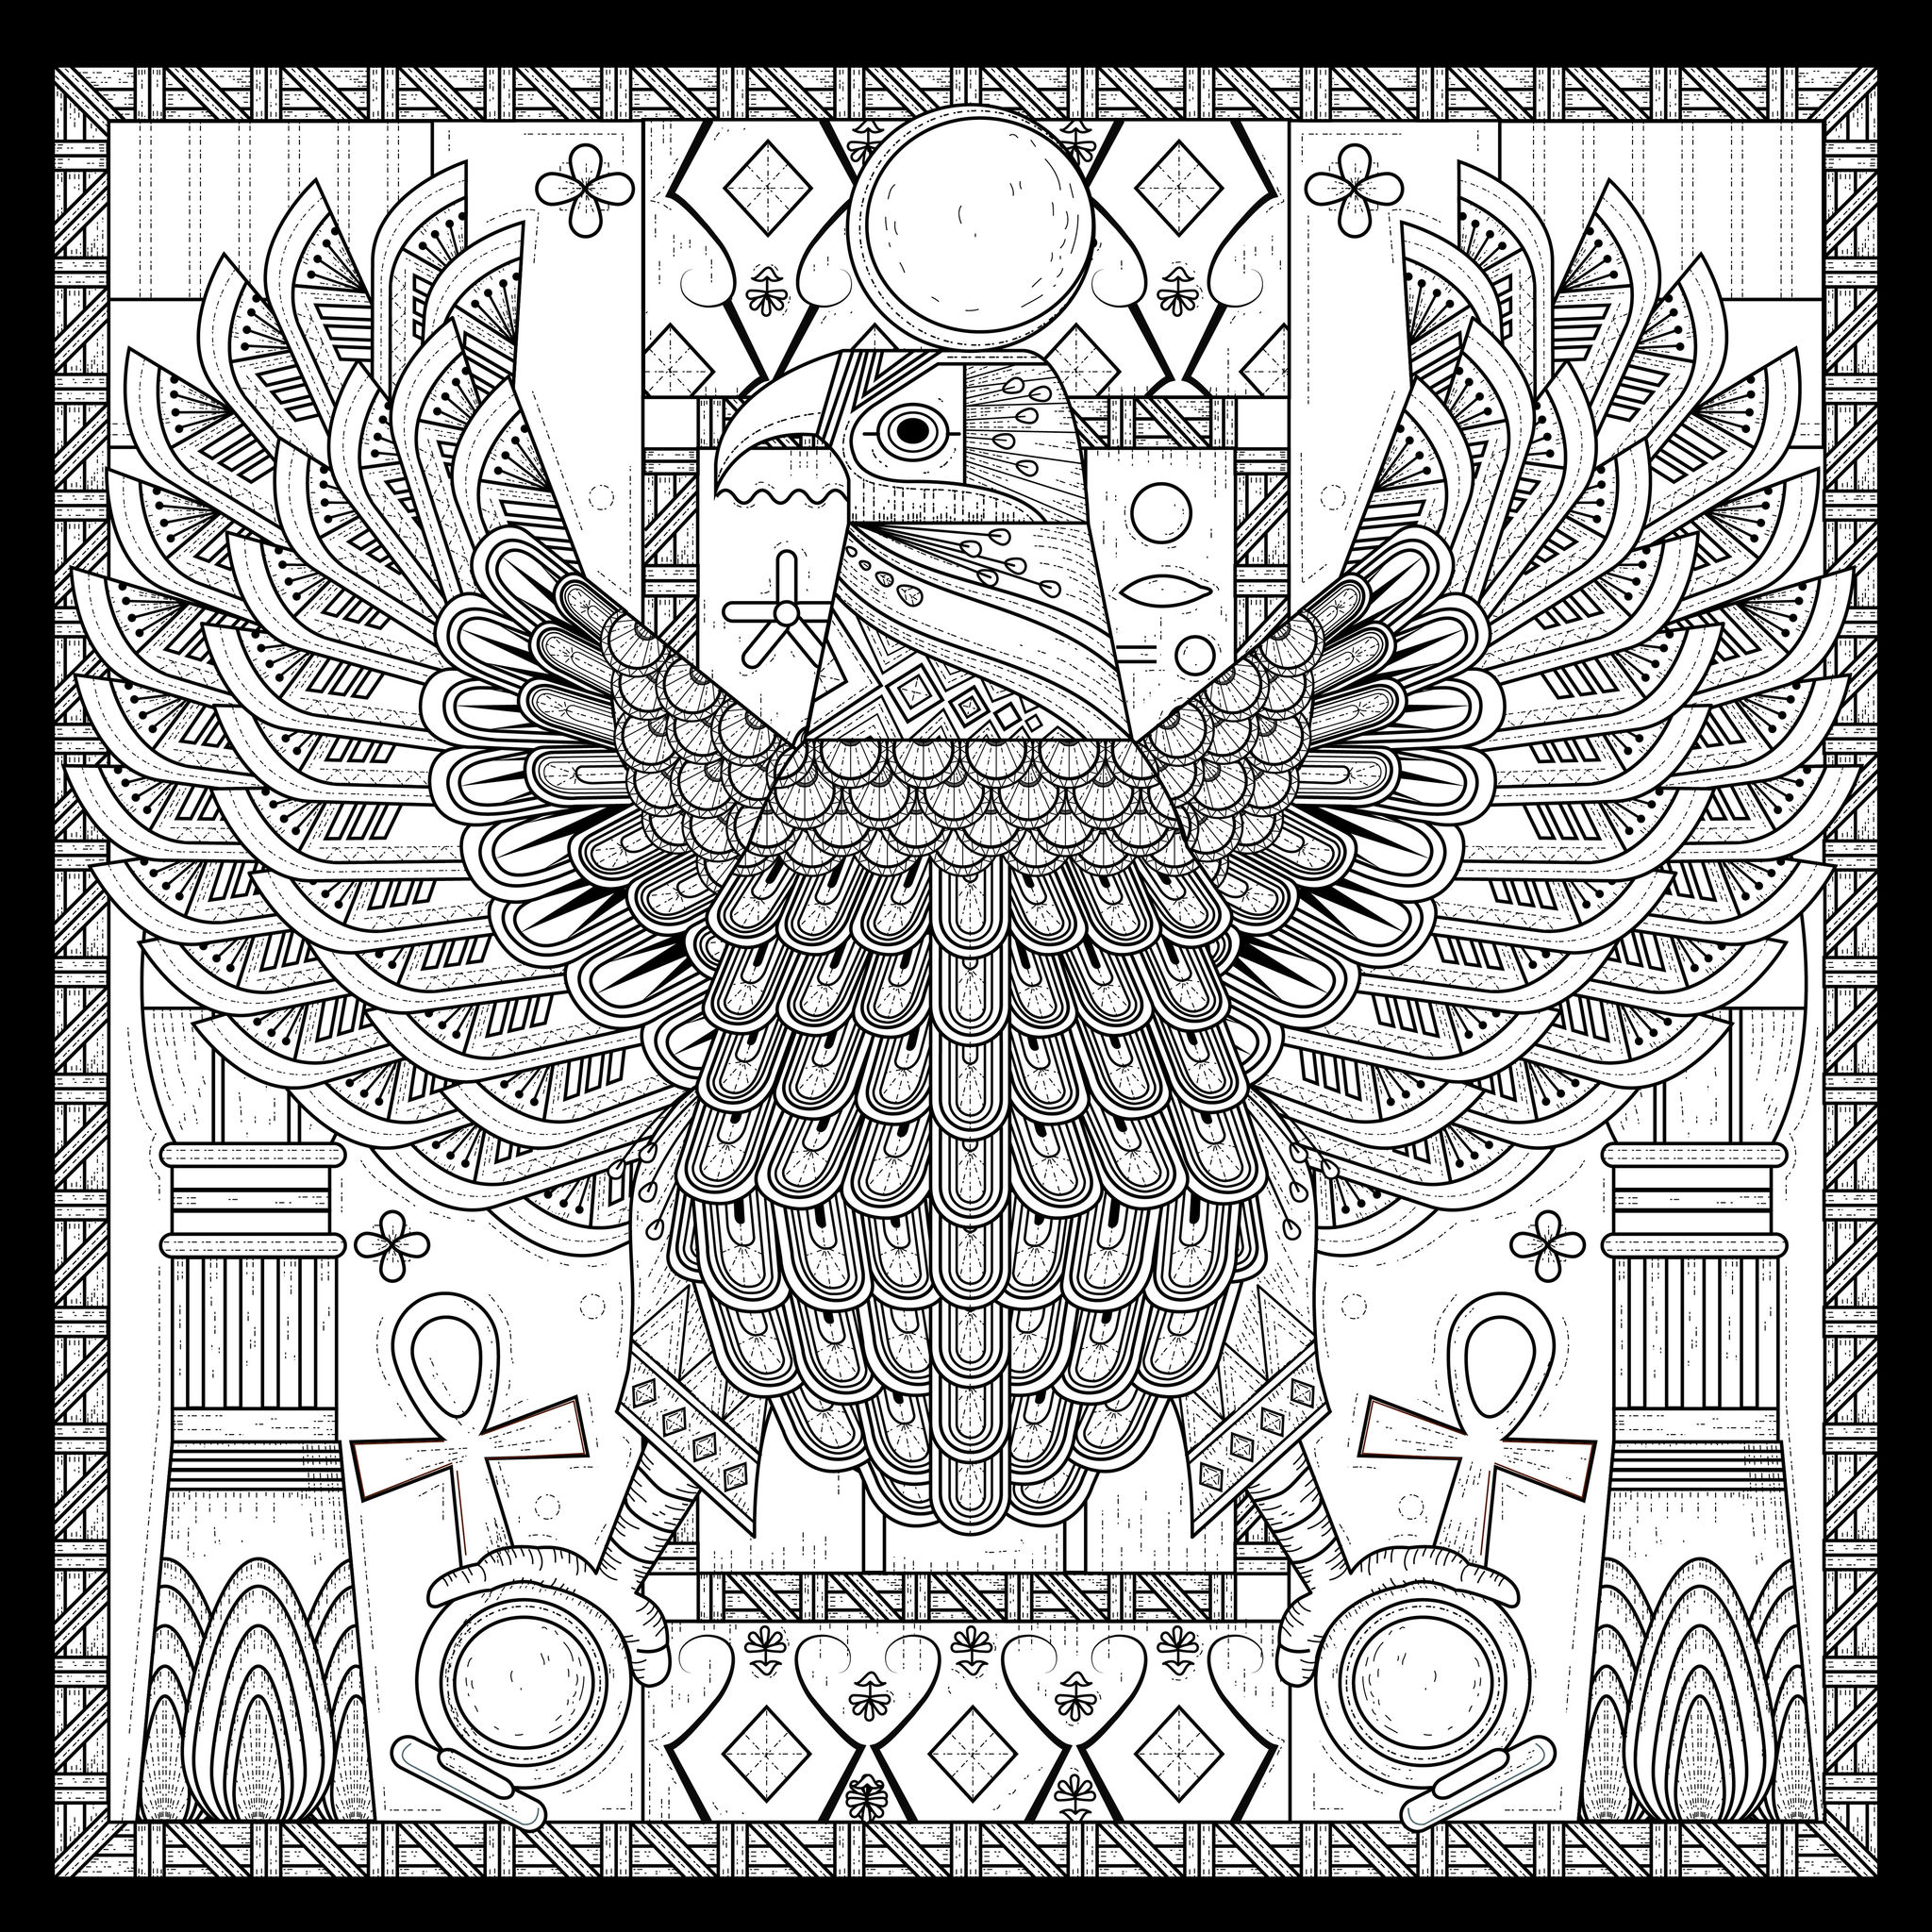 Coloriage complexe style égyptien d'un aigle, symbole d'unité, Source : 123rf   Artiste : Kchung